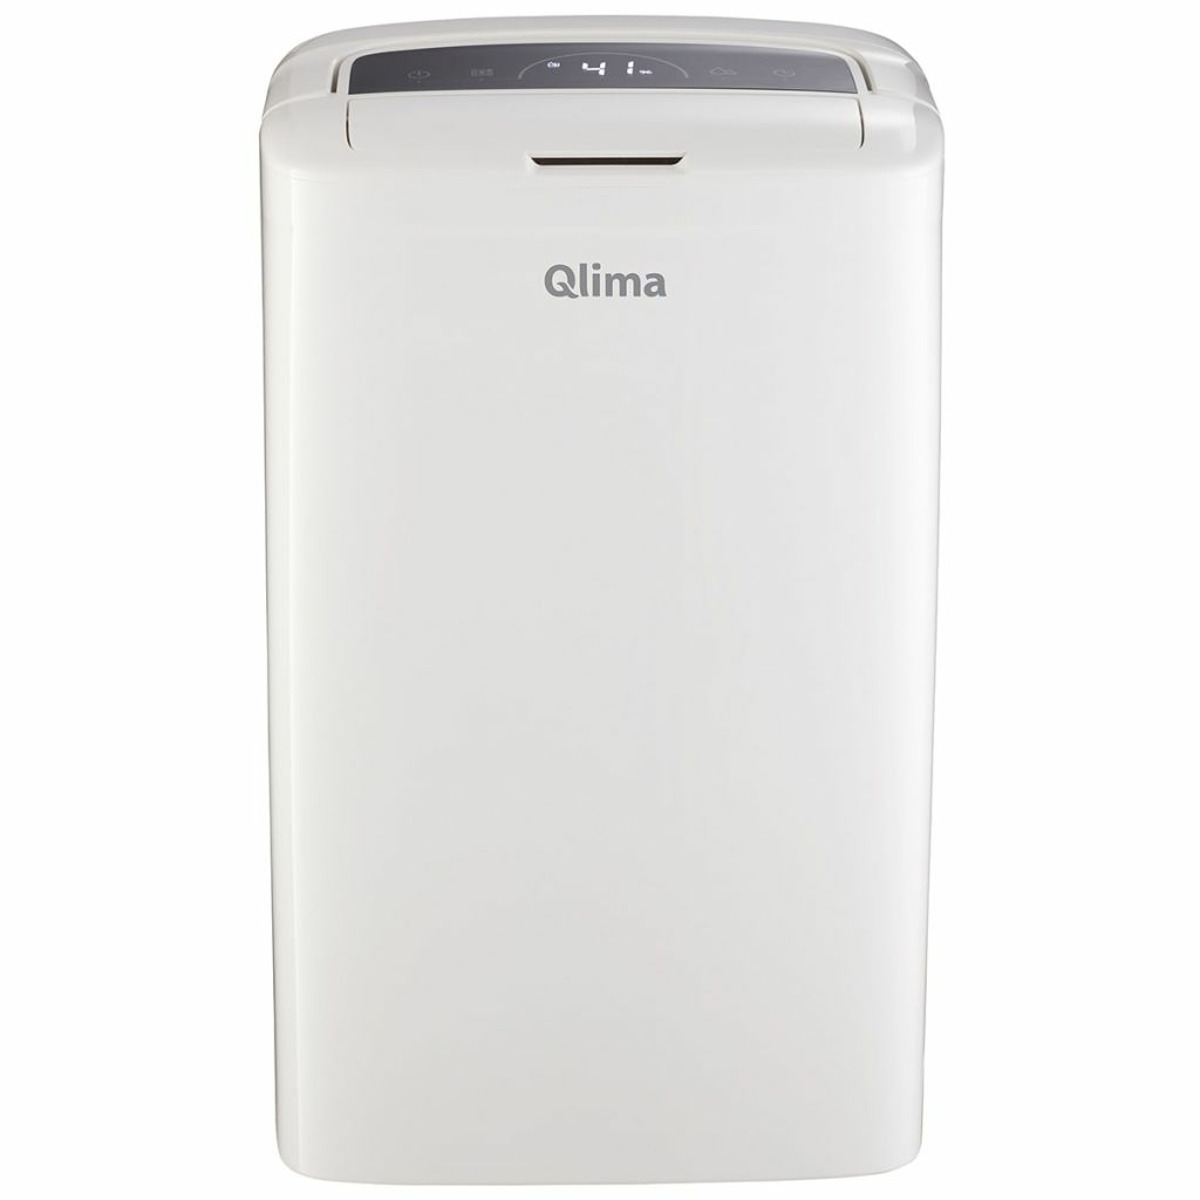 QLIMA Weiß 419385 kW, 75 Luftentfeuchter (0,153 m³) Raumgröße: